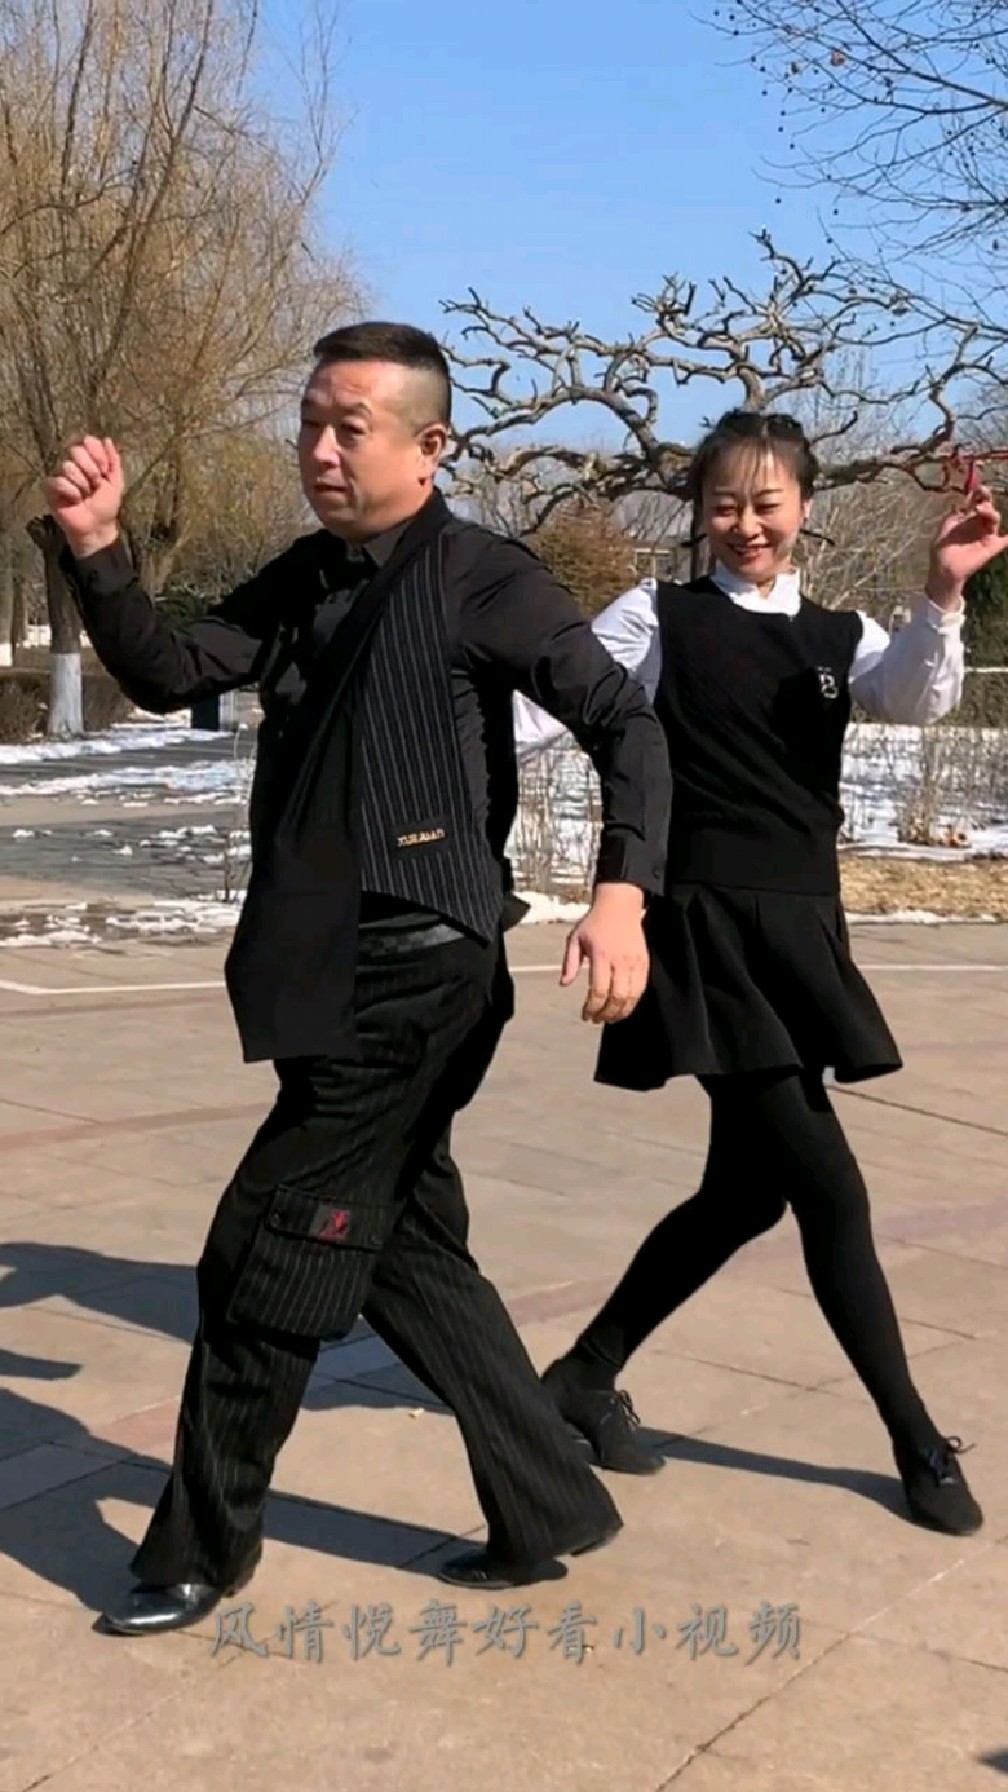 小芳和姐夫表演精彩吉舞,真漂亮